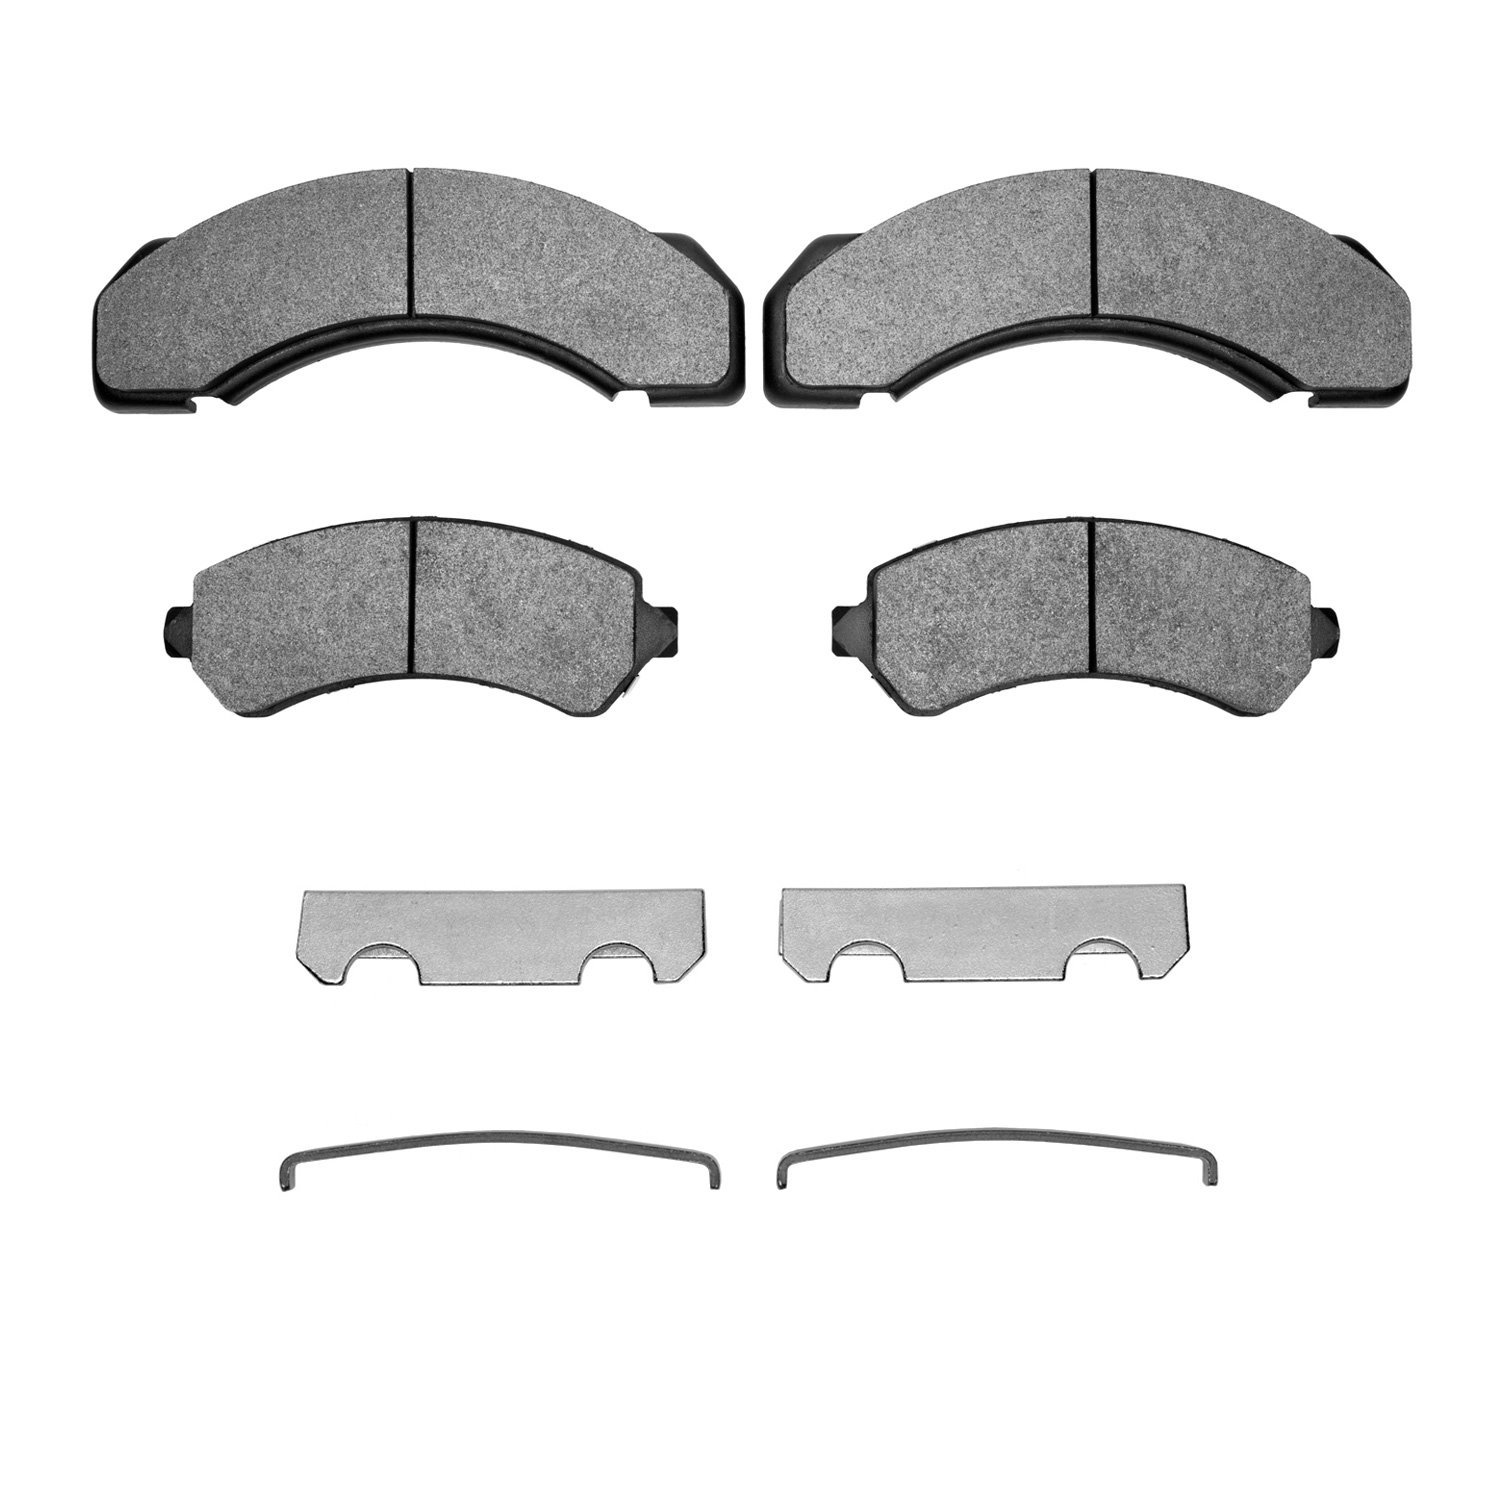 Semi-Metallic Brake Pads & Hardware Kit, 1995-2006 GM, Position: Front & Rear